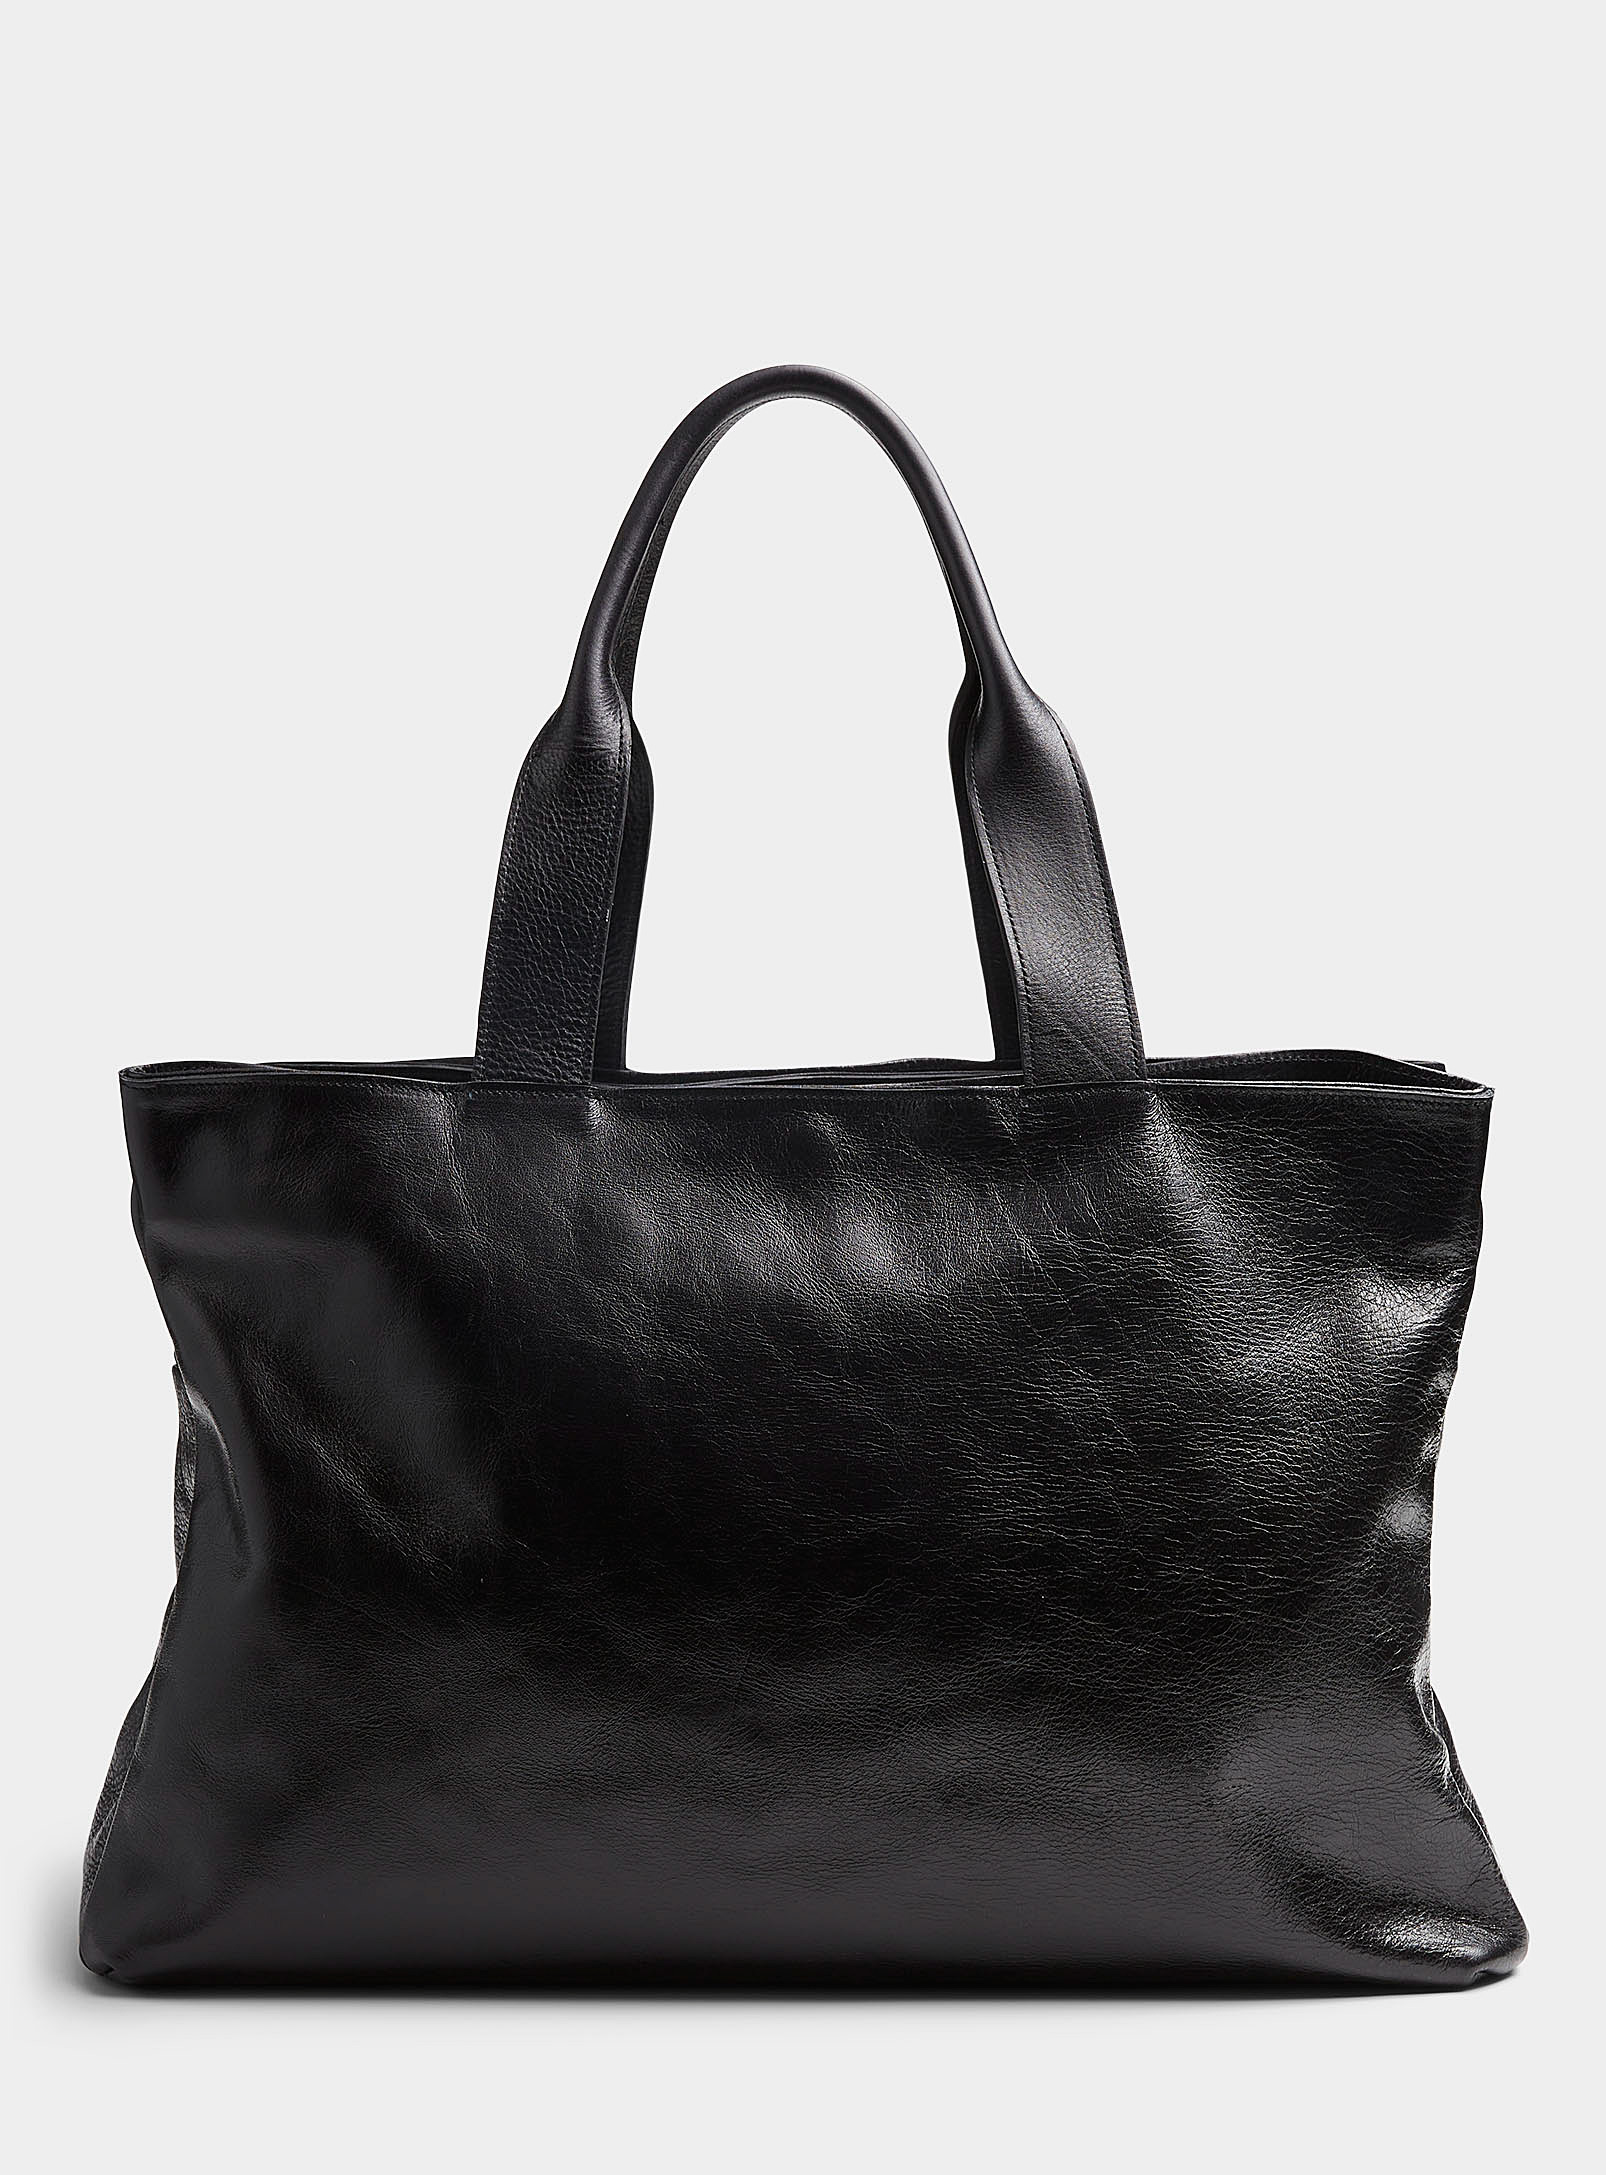 Brussosa - Men's Robin supple leather weekend bag